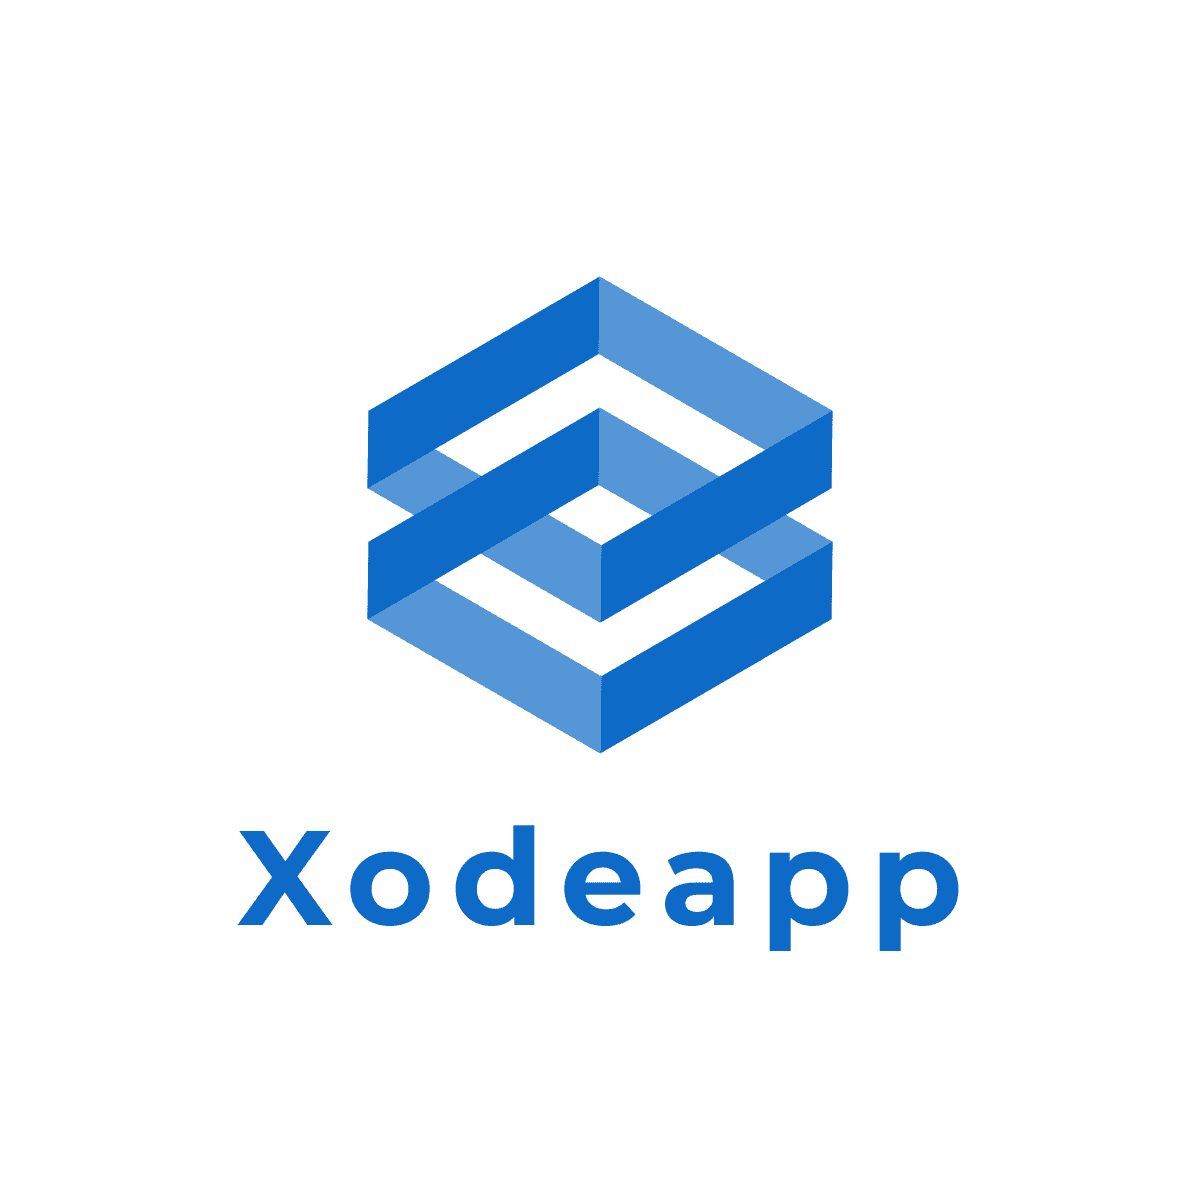 Xodeapp logo